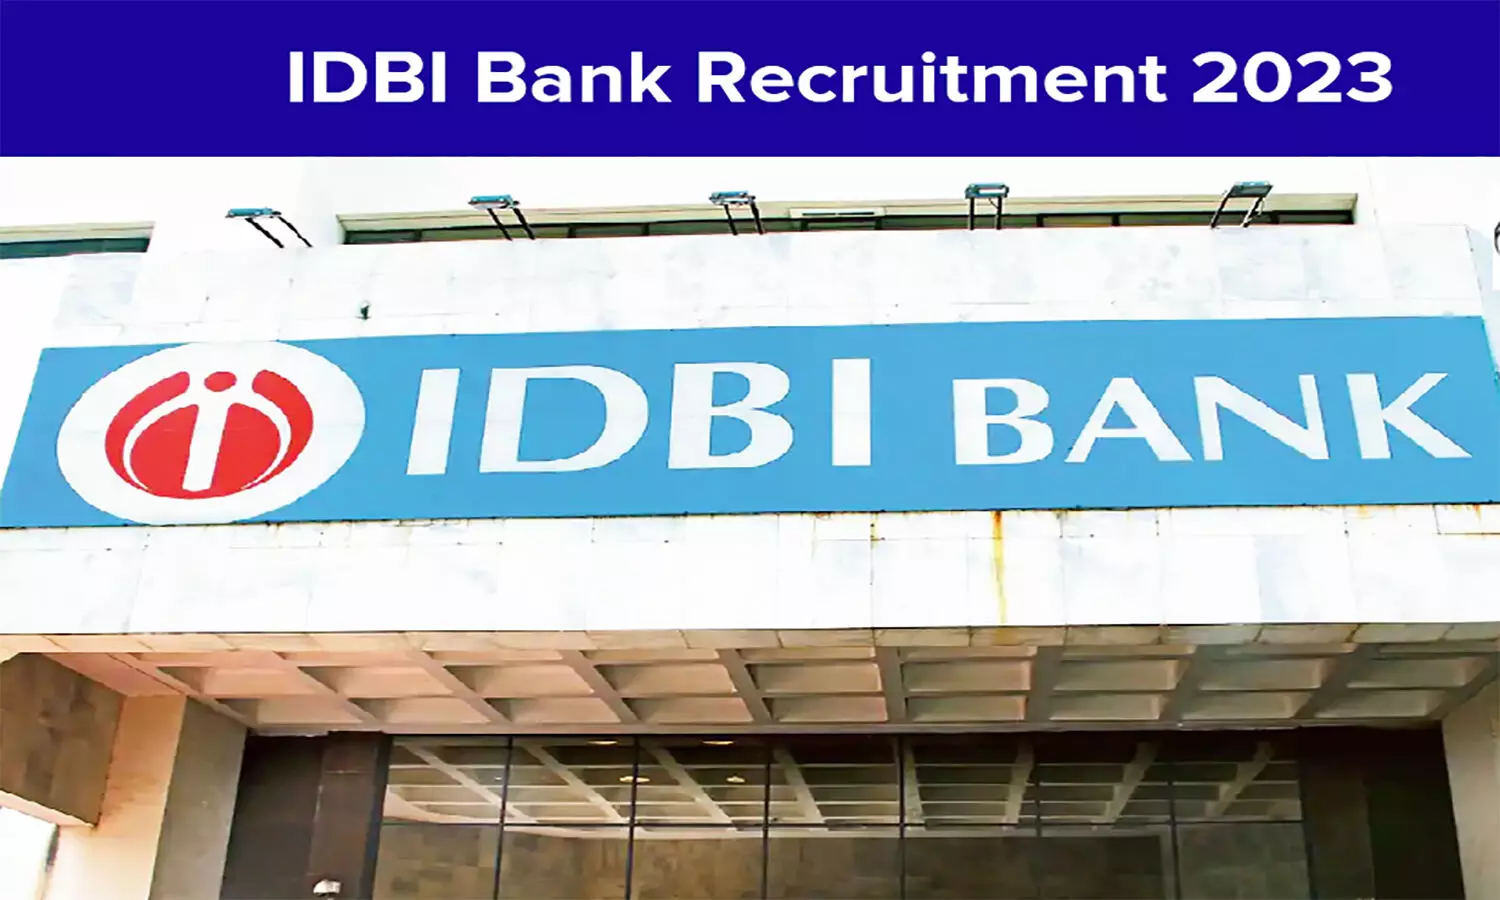 Bank Recruitment 2023: IDBI बैंक में स्पेशलिस्ट आफिसर के पदों पर निकली वैकेंसी, प्रक्रिया व आयु सीमा जान लें